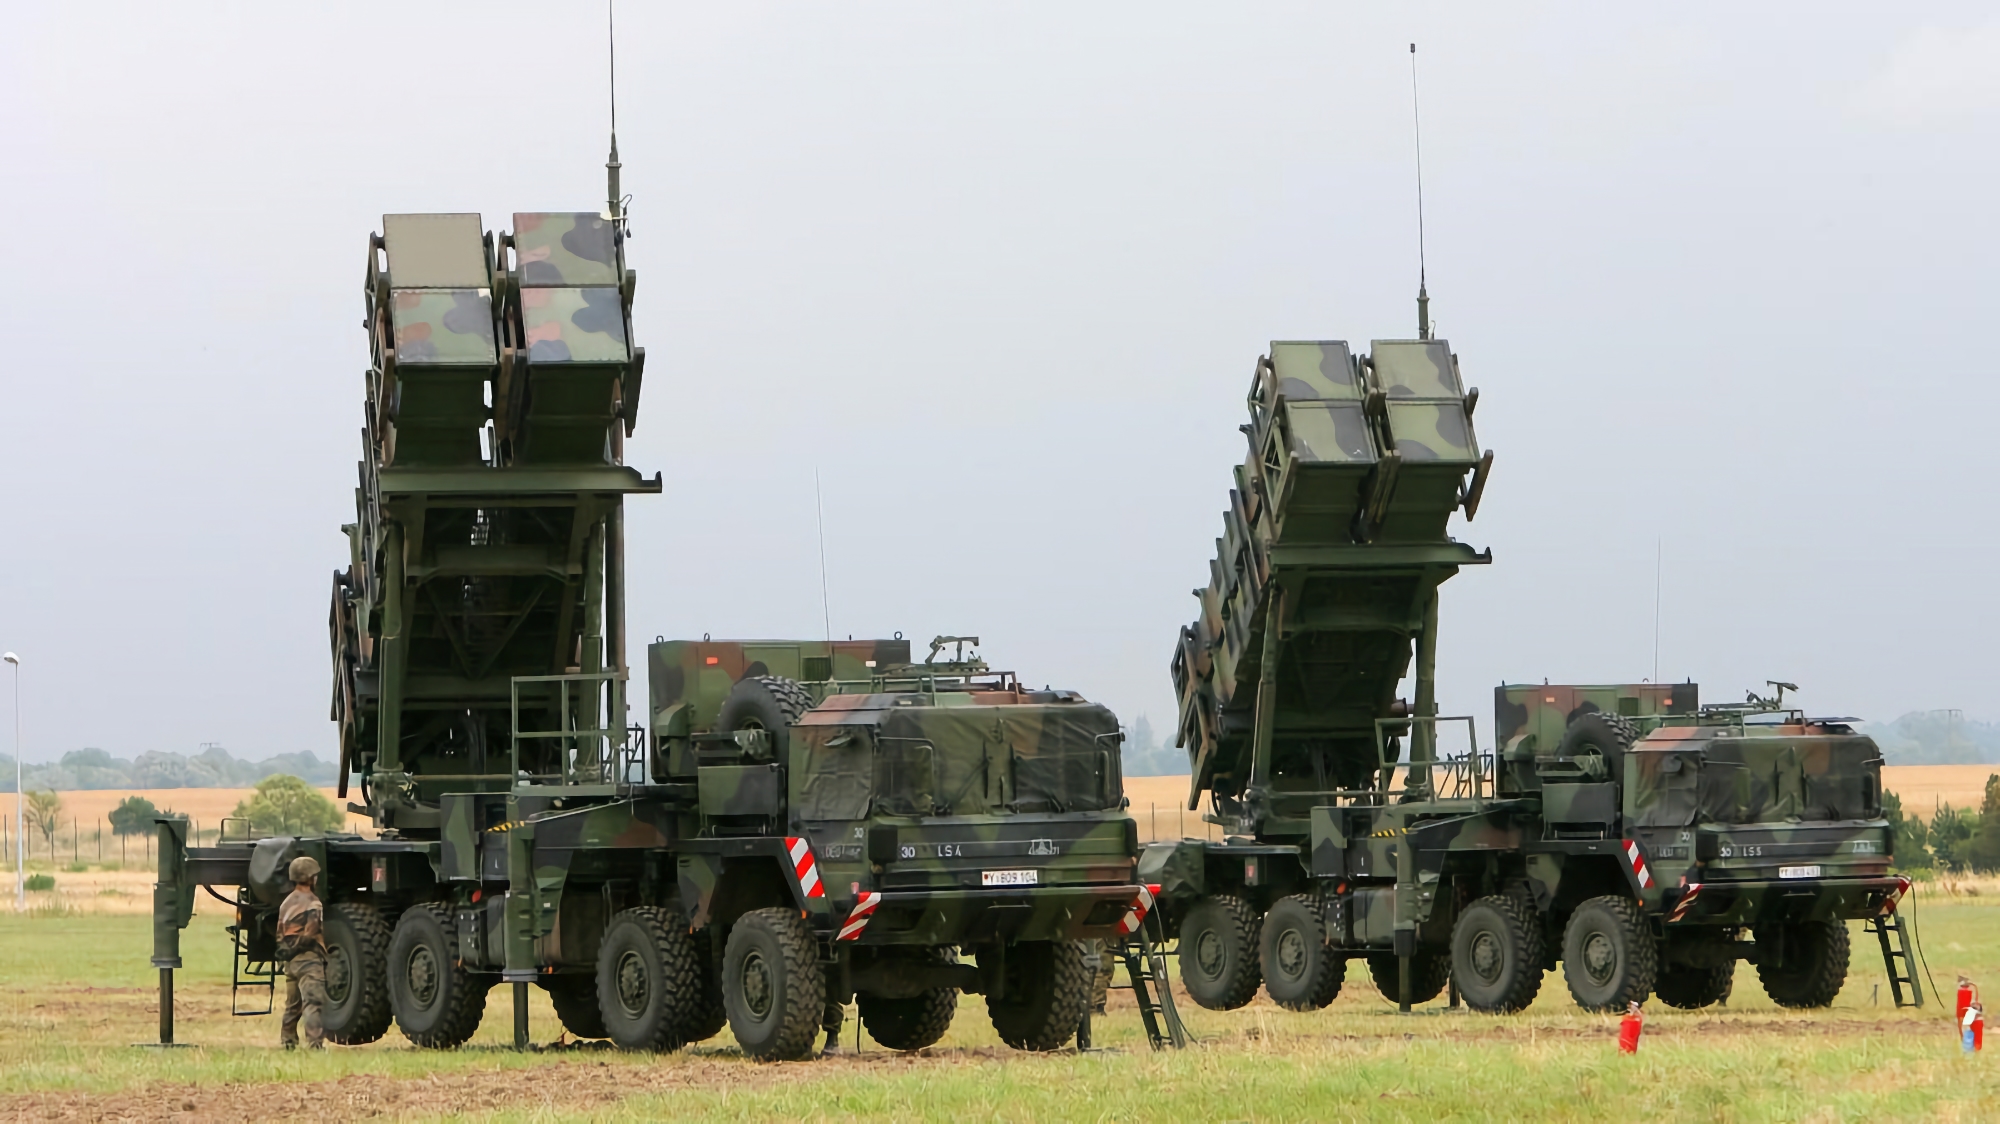 Le ministre ukrainien de la défense confirme que les forces armées ukrainiennes reçoivent le système de missiles sol-air MIM-104 Patriot